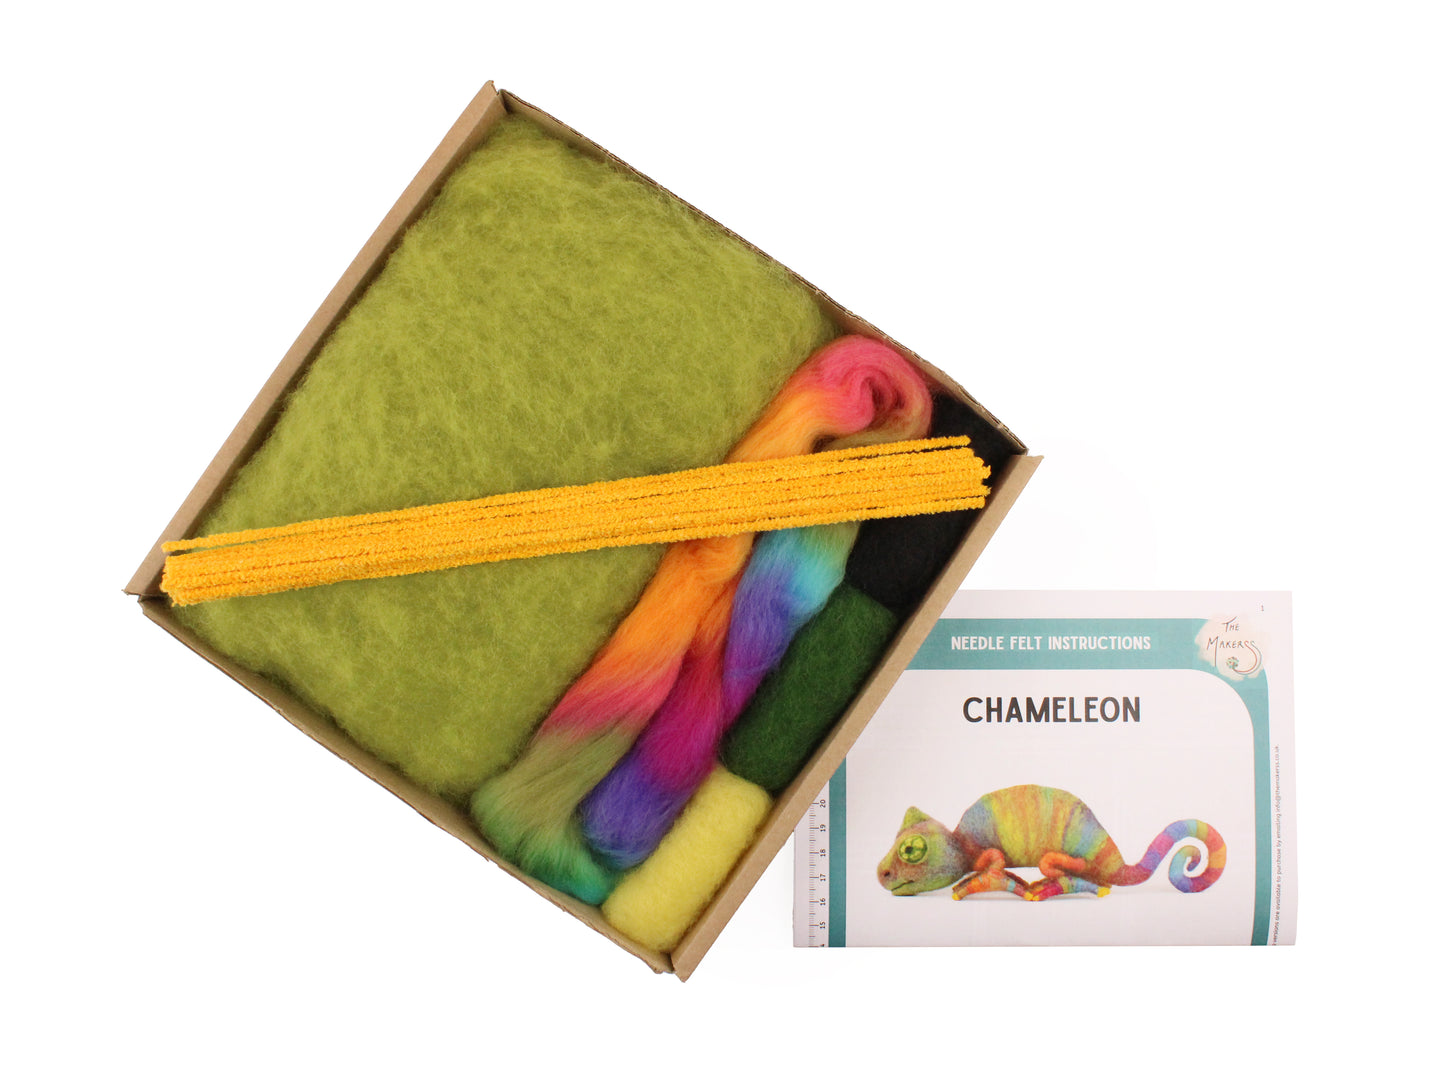 Chameleon Needle Felt Pack - The Makerss